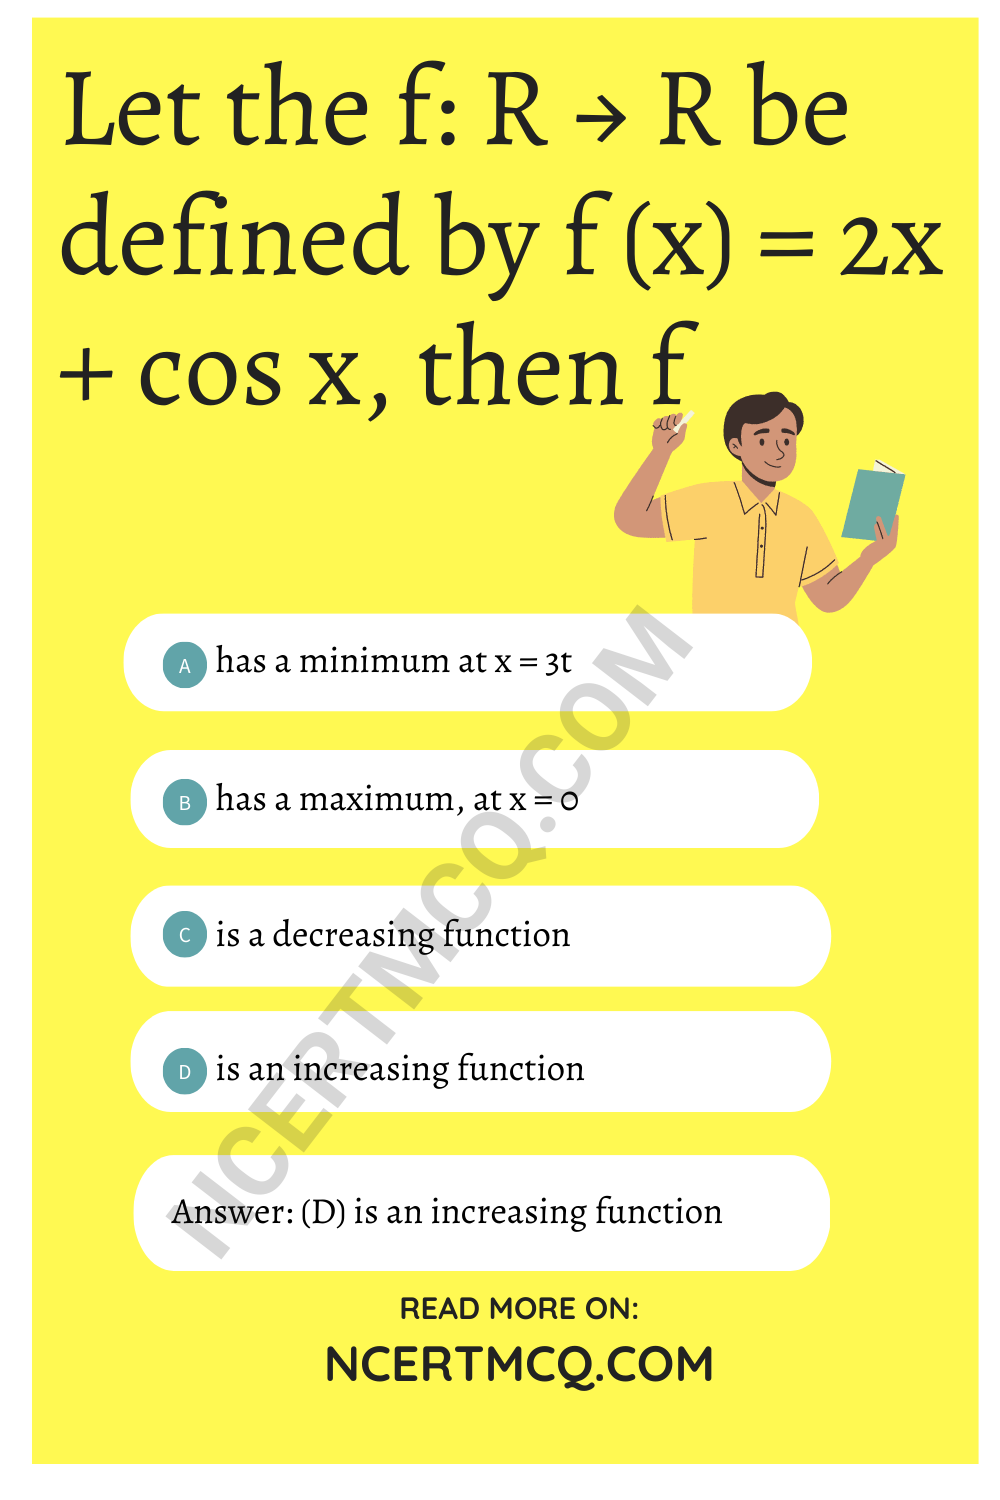 Let the f: R → R be defined by f (x) = 2x + cos x, then f